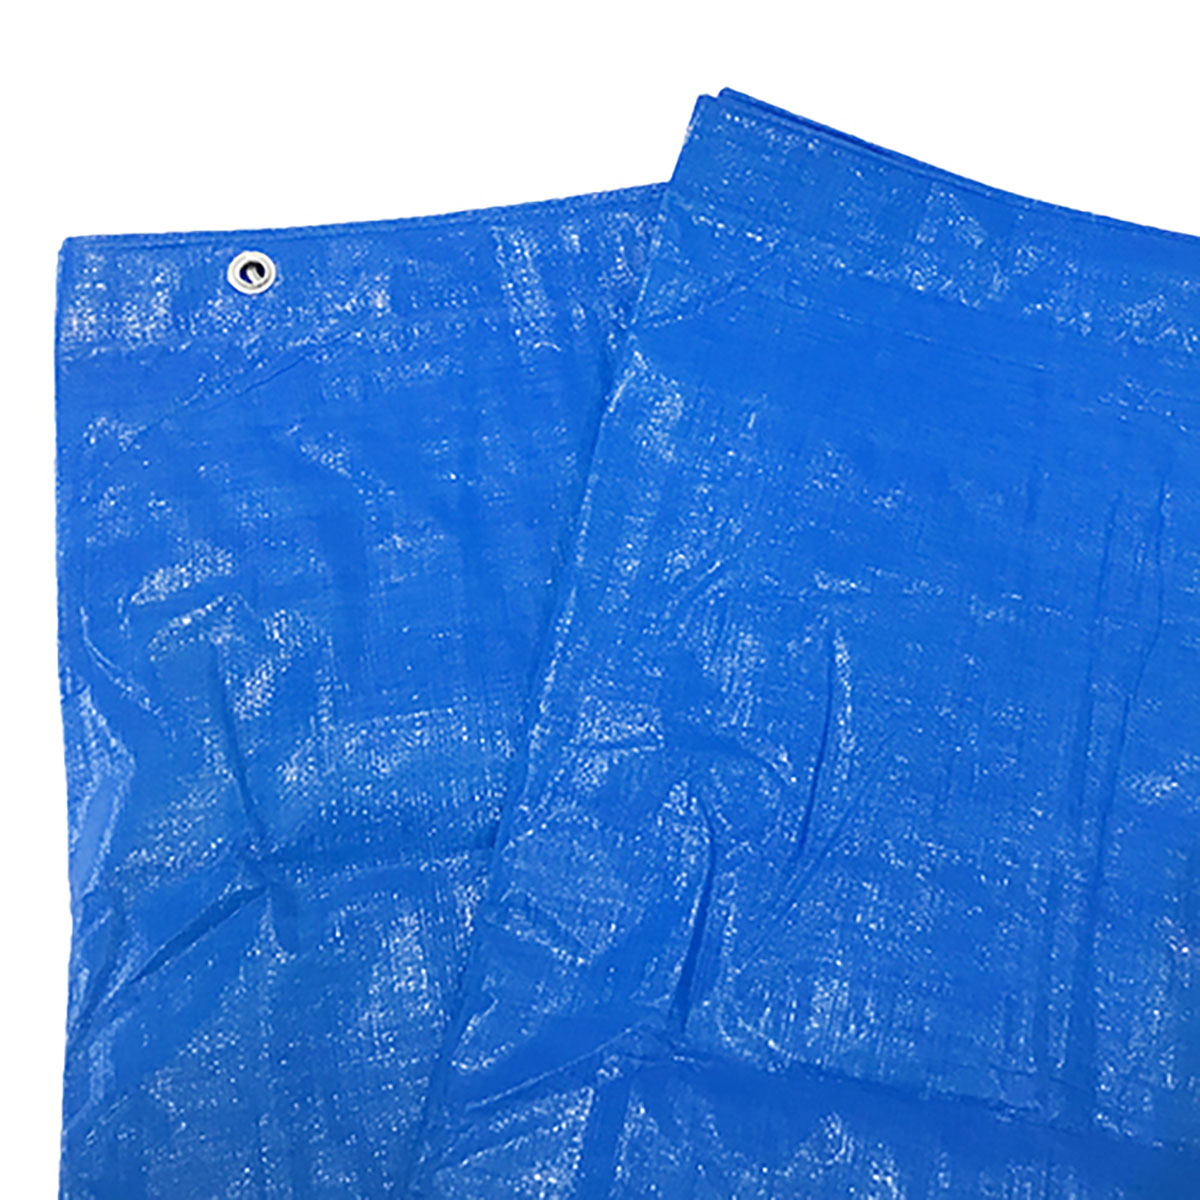 ブルーシート 巾約1.7×長さ約2.5m #3000